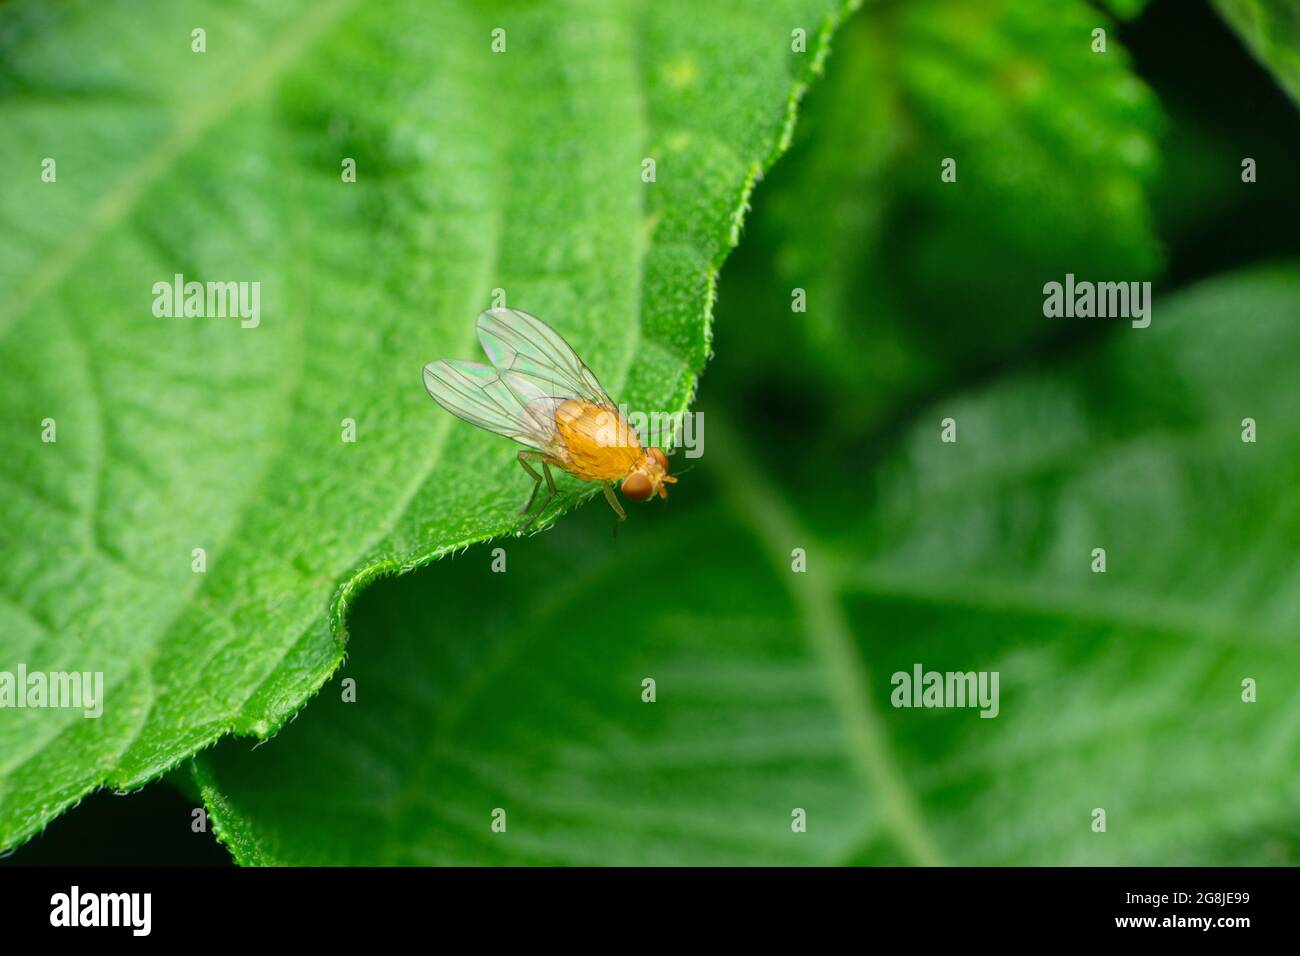 Dorsal view of fruit fly, Anastrepha ludens, Satara, Maharashtra, India Stock Photo